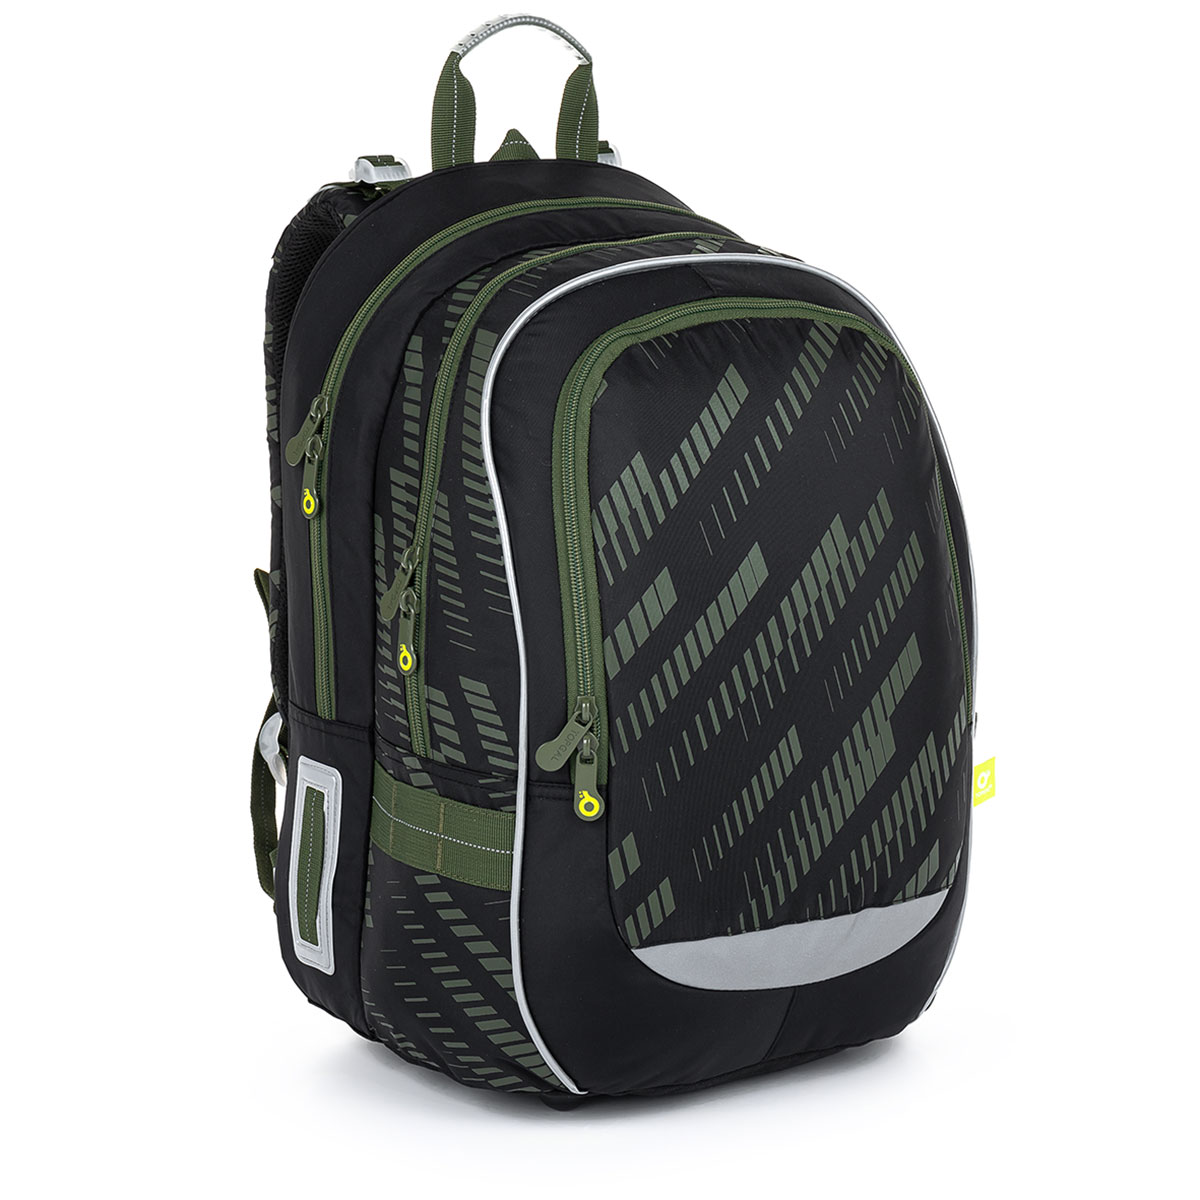  Školní batoh s khaki žíháním TOPGAL CODA 23017